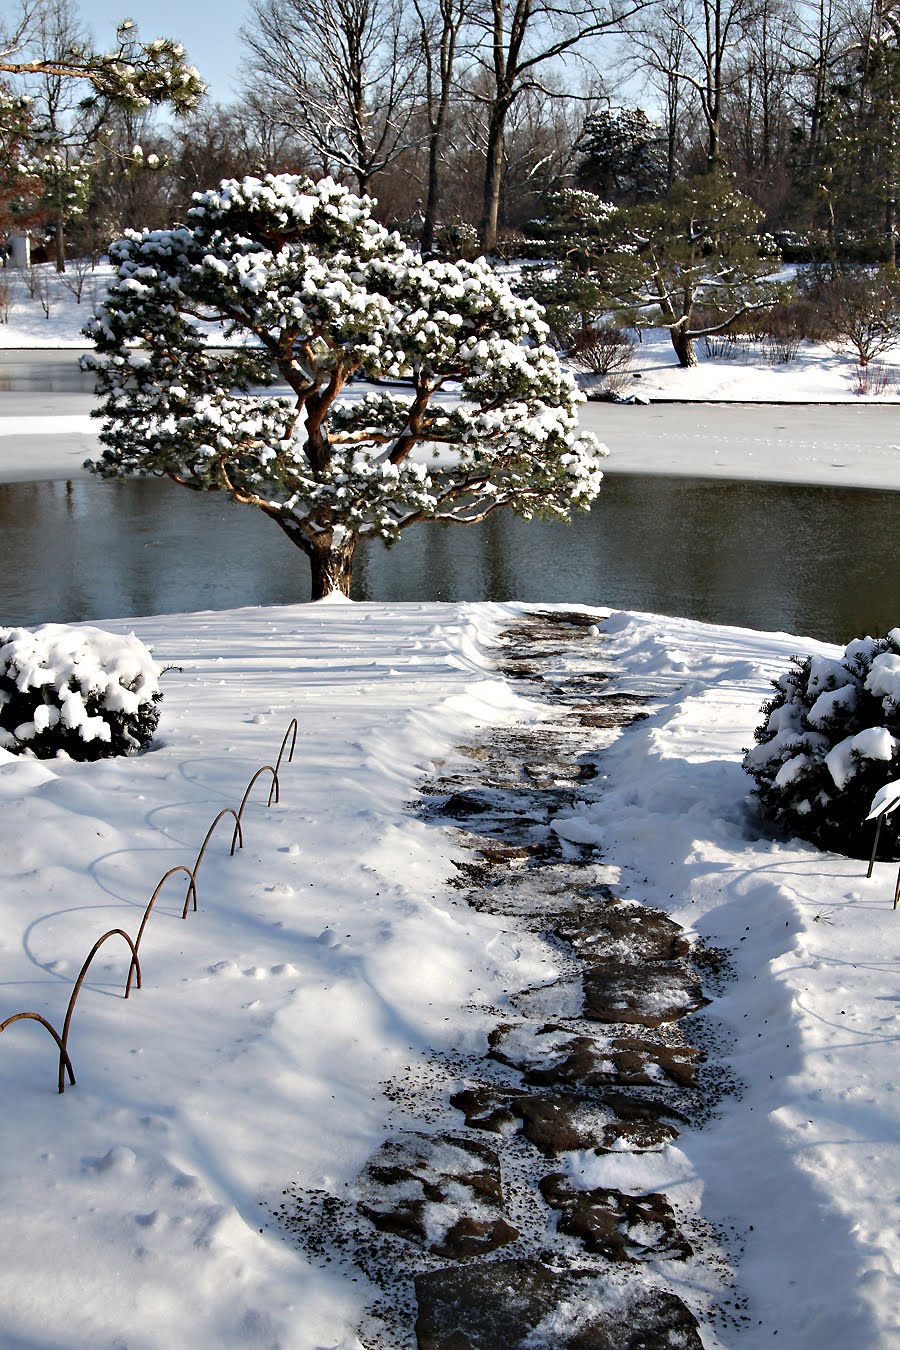 [jg_black+pines+in+snow+with+blue+sky_2010_spra_007.jpg]